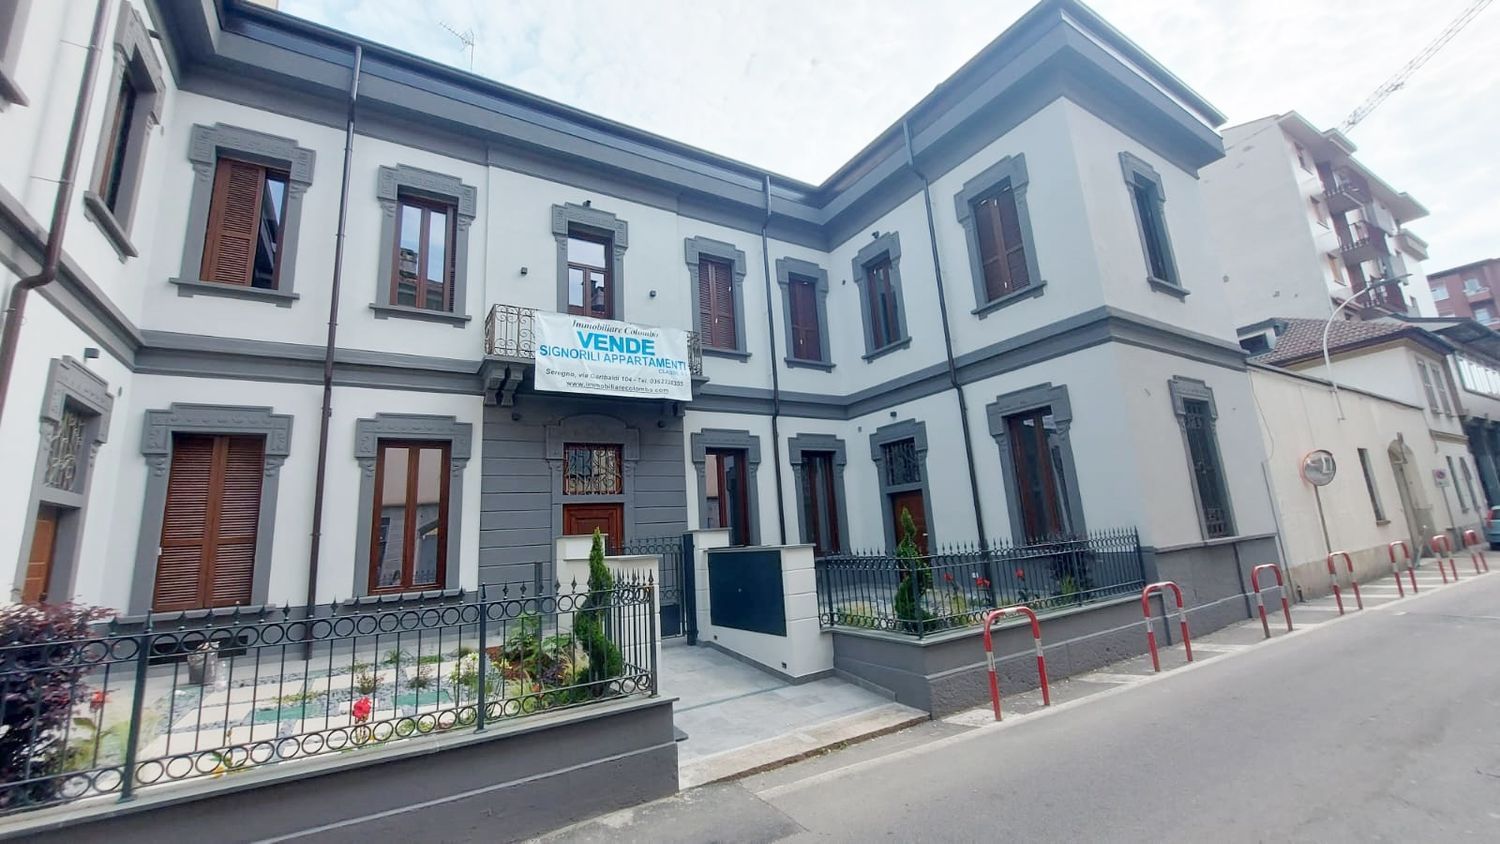 Attico / Mansarda in vendita a Seregno, 3 locali, prezzo € 369.000 | PortaleAgenzieImmobiliari.it